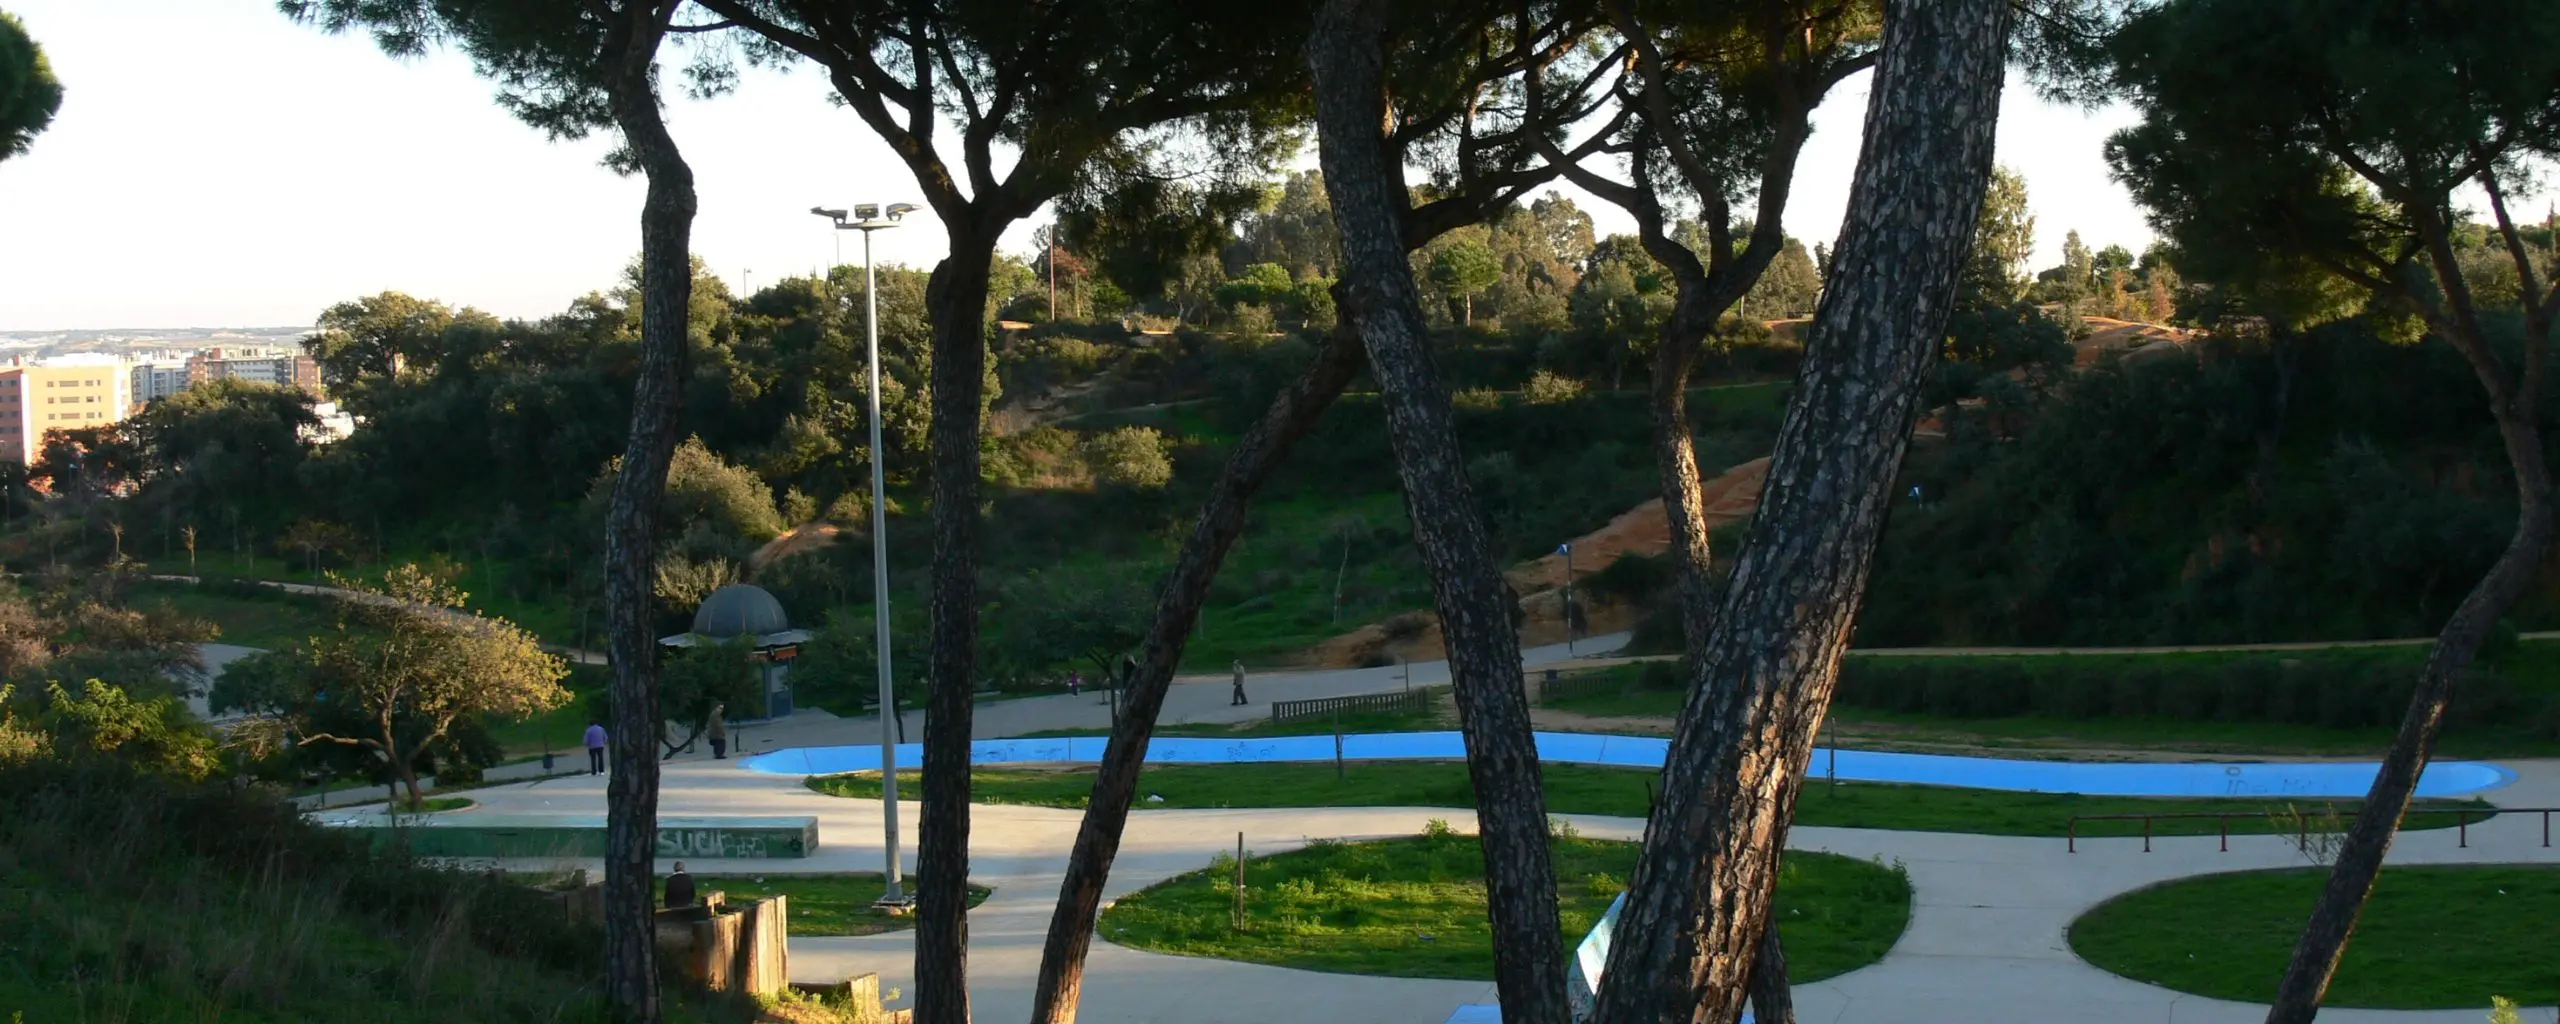 Parque Moret, Huelva